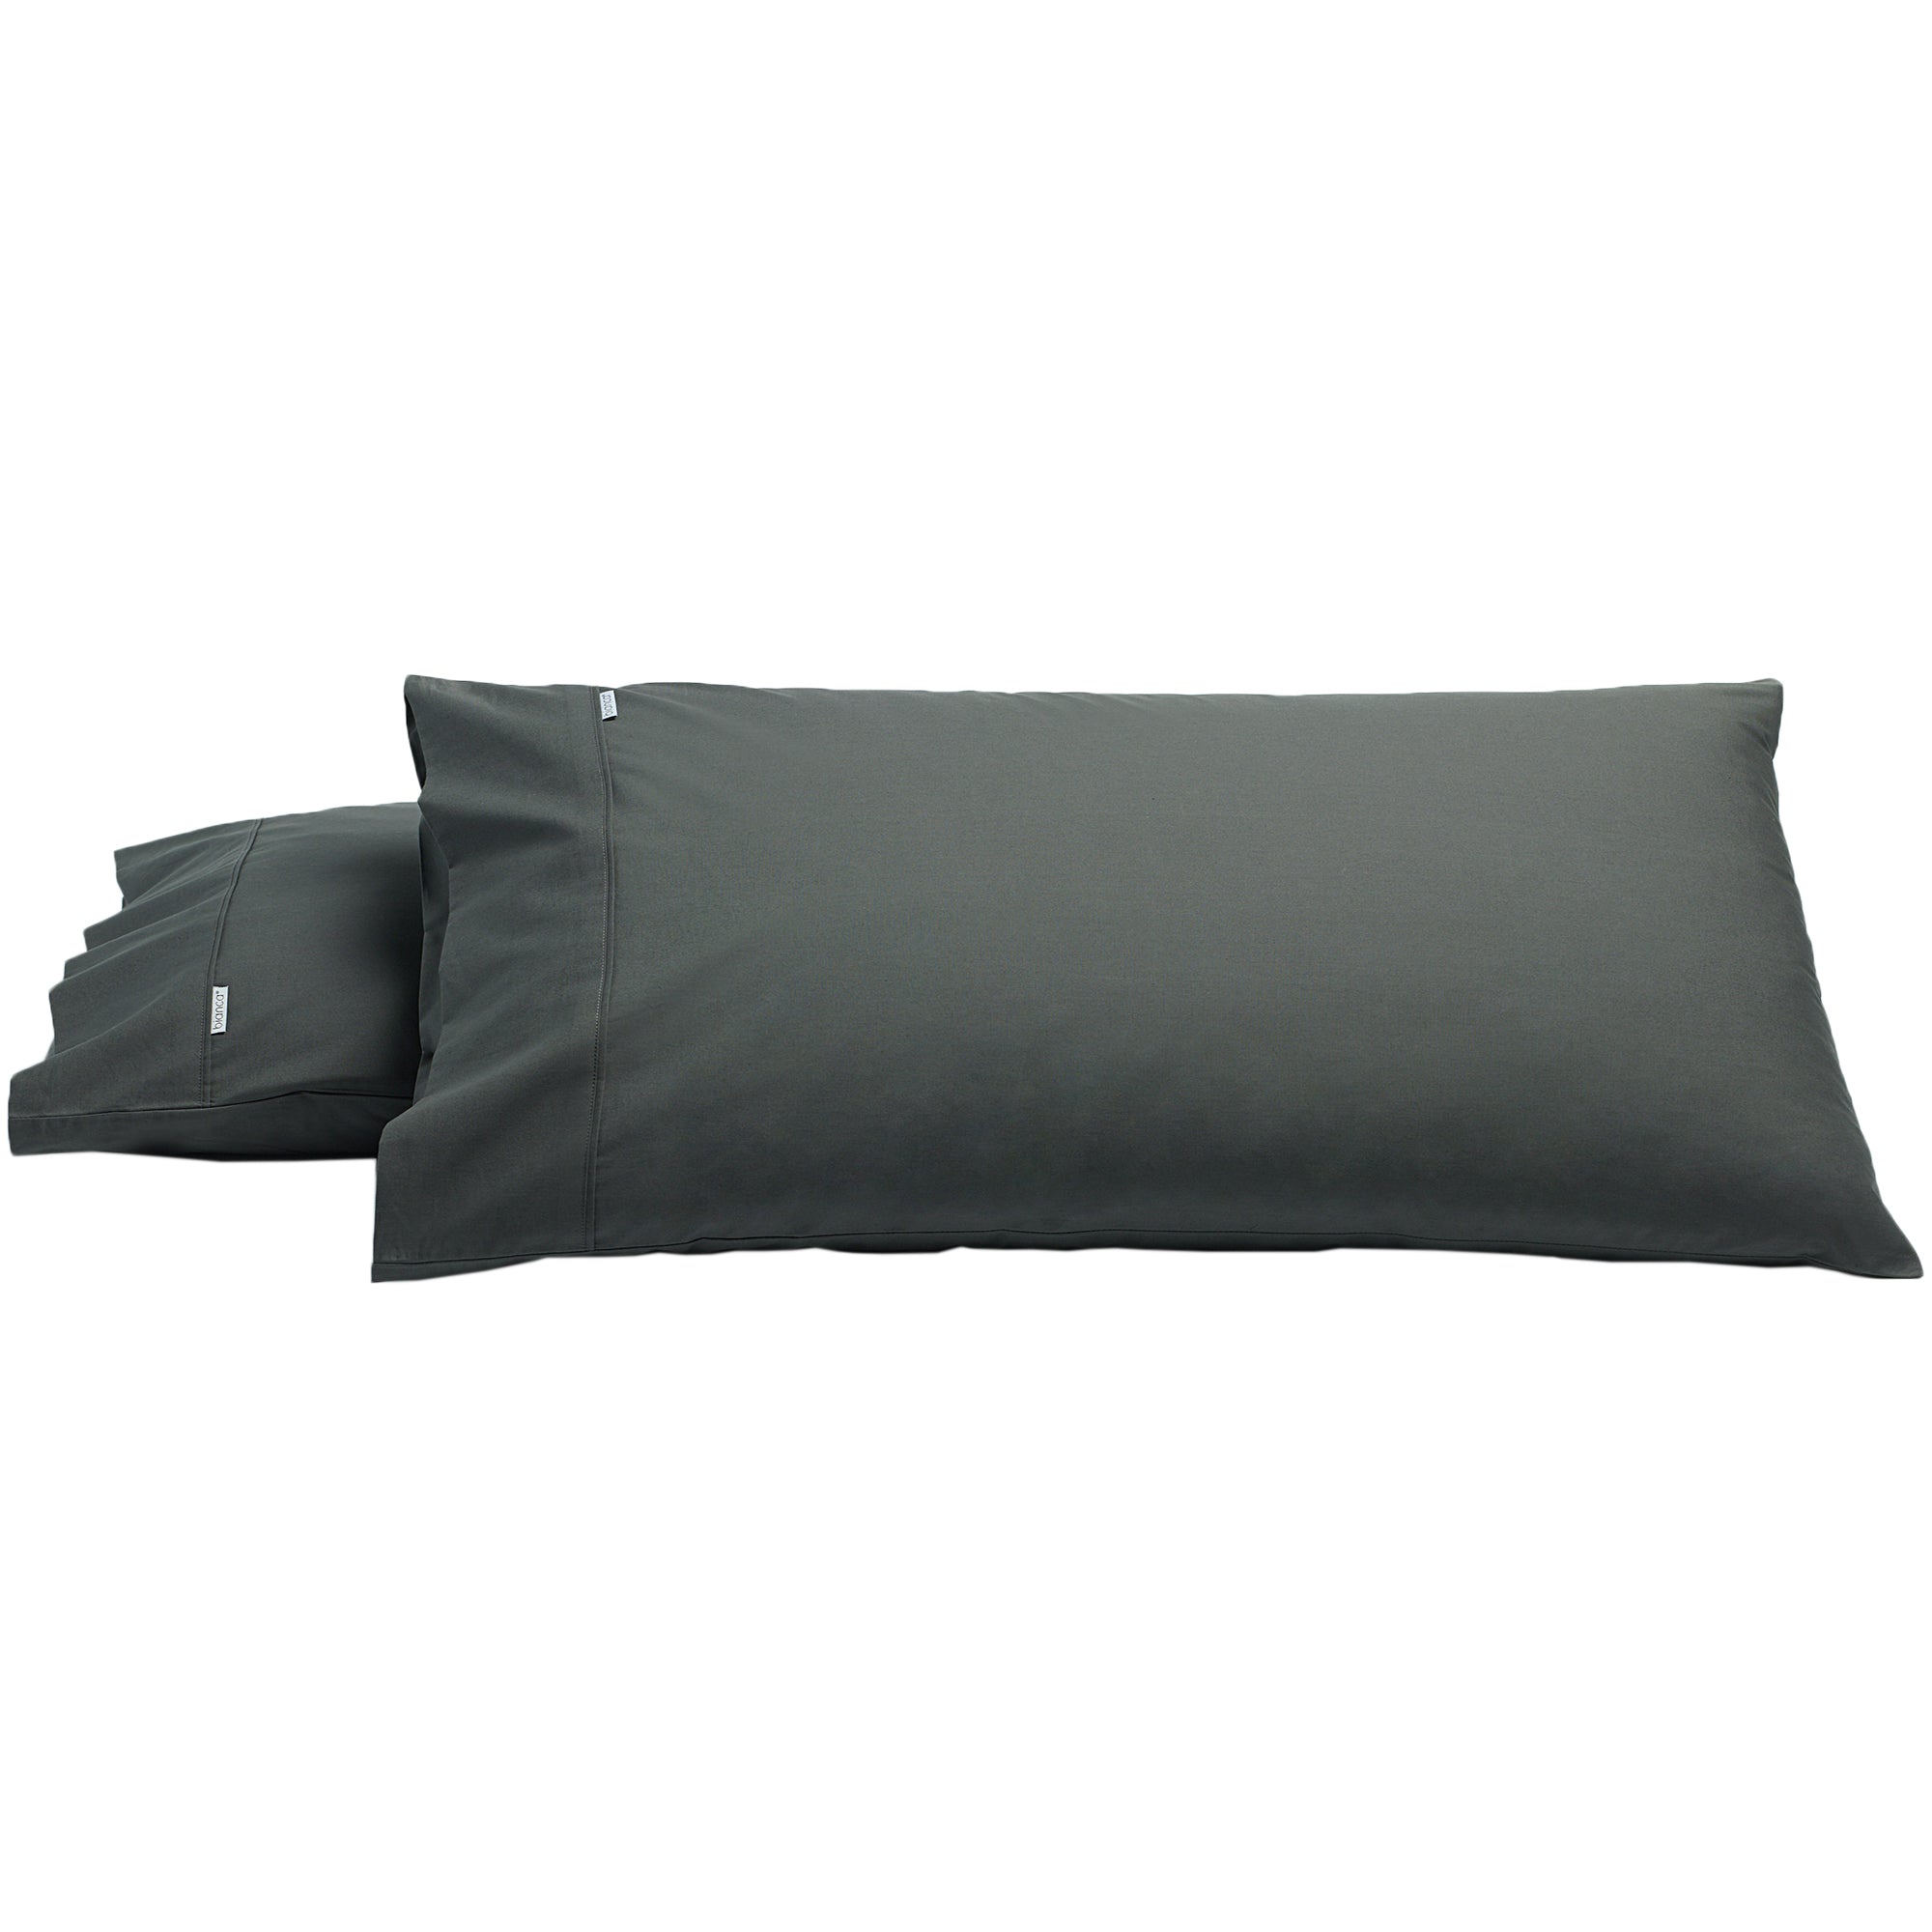 Heston Pillow Case Pair - Mattress & Pillow ScienceManchester